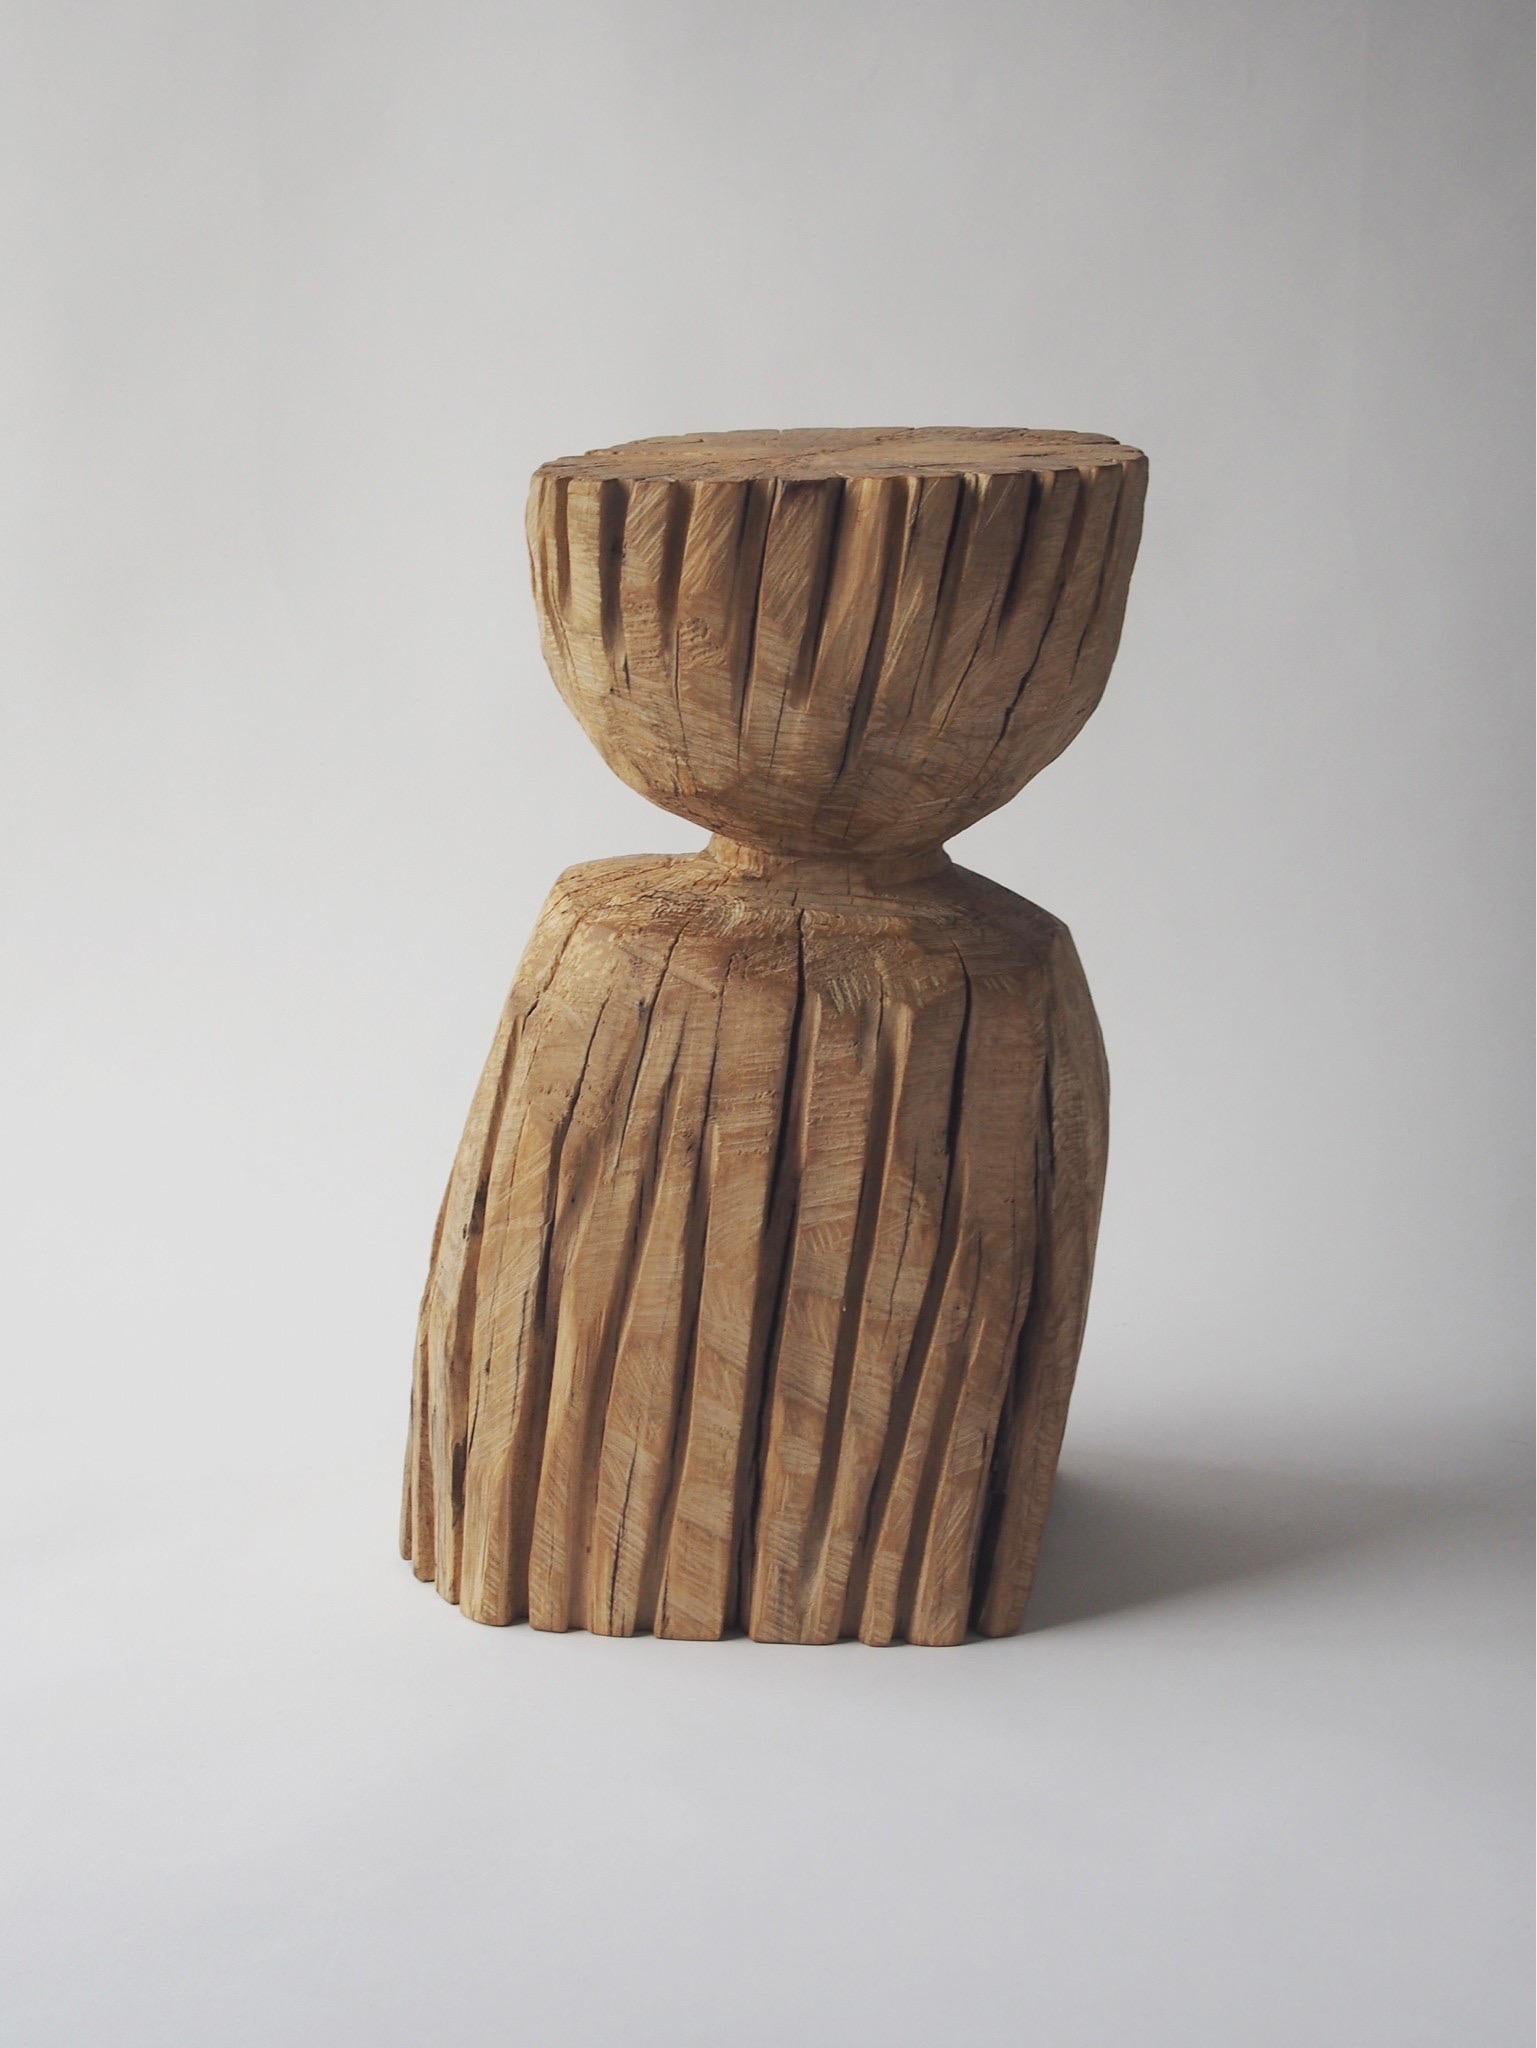 Name: Junge
Skulpturaler Hocker von Zougei geschnitzte Möbel
MATERIAL: Zelkova
Diese Arbeit wird mit einigen Arten von Kettensägen aus Holz geschnitzt.
Das meiste Holz, das für Nishimuras Werke verwendet wird, ist nicht zu gebrauchen, diese Hölzer